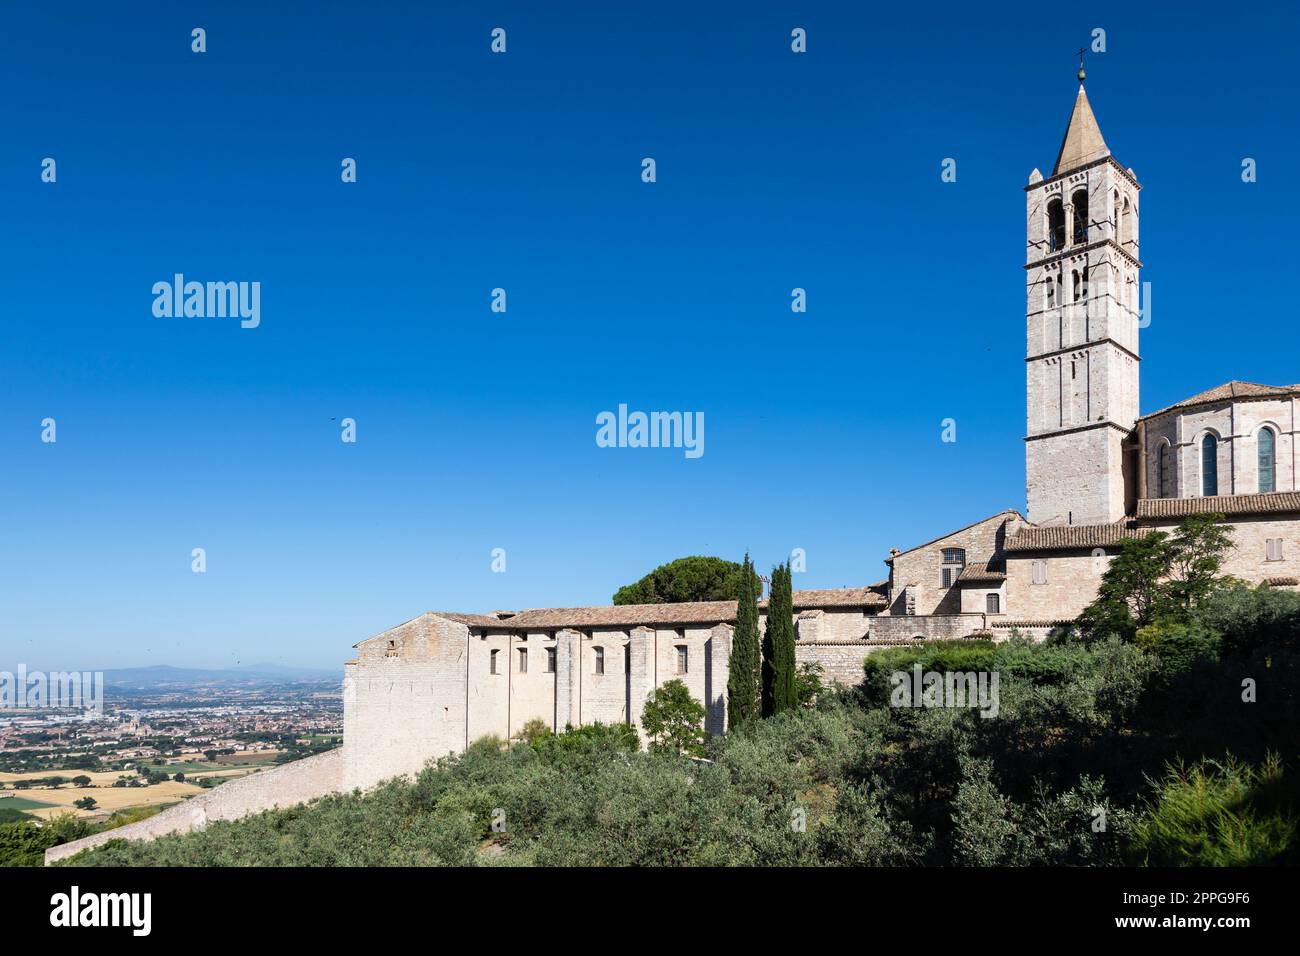 Kirche im Dorf Assisi in Umbrien, Italien. Die Stadt ist berühmt für die wichtigste italienische Basilika, die dem St. Francis - San Francesco. Stockfoto